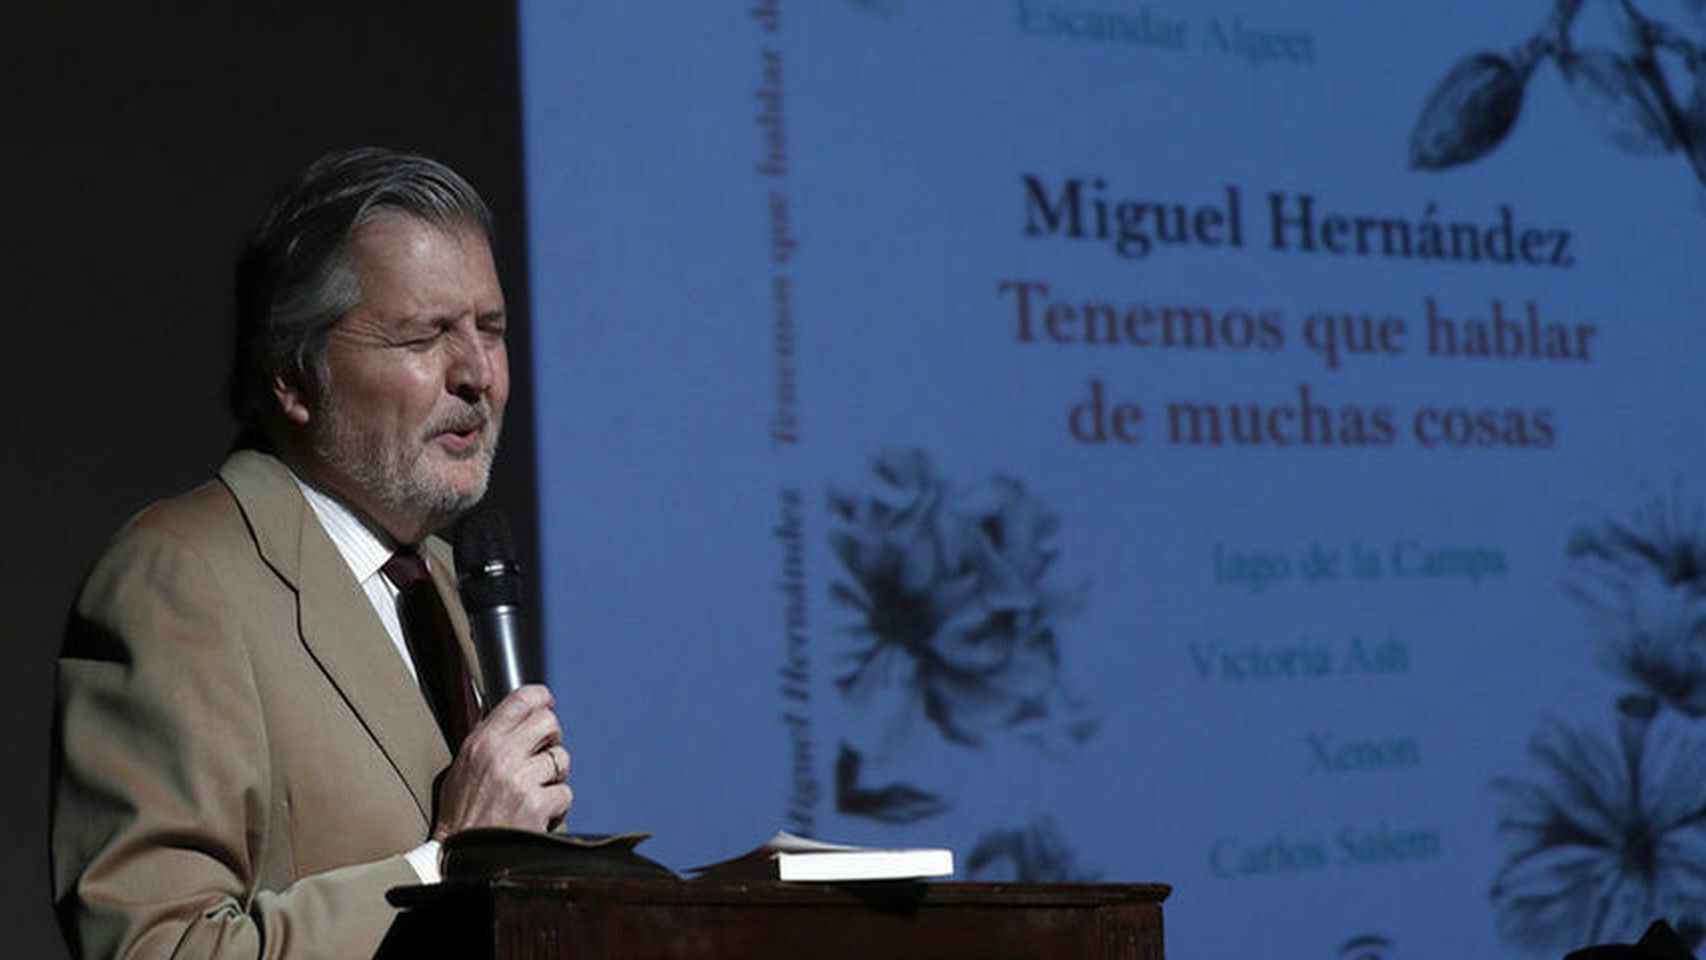 Méndez de Vigo recitando  a Miguel Hernández.